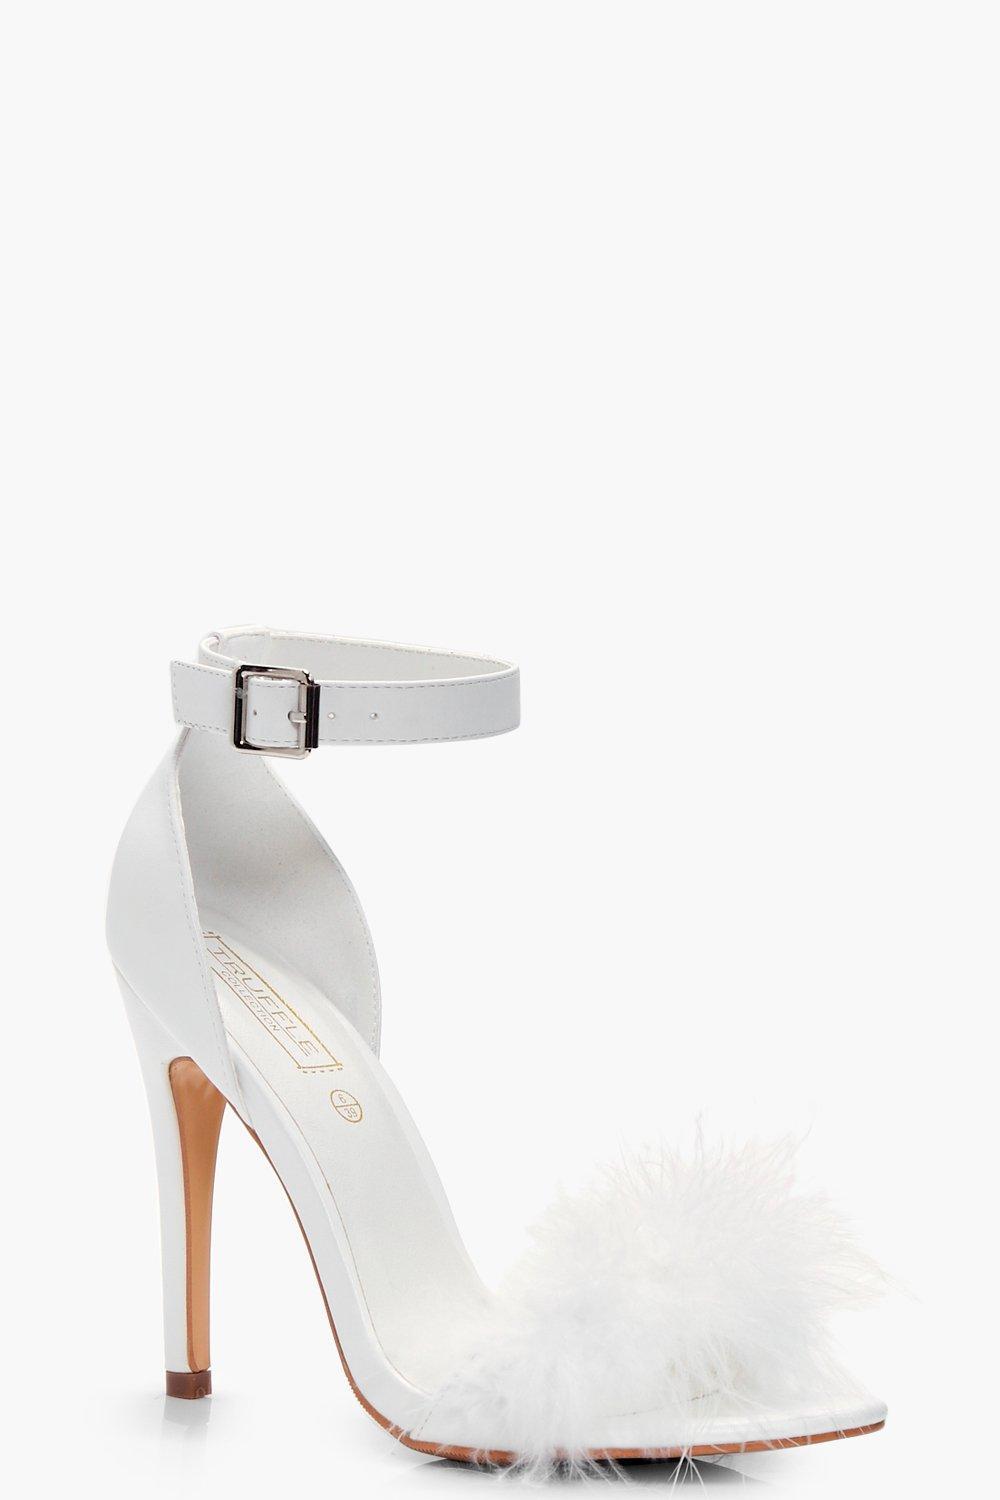 designer feather heels